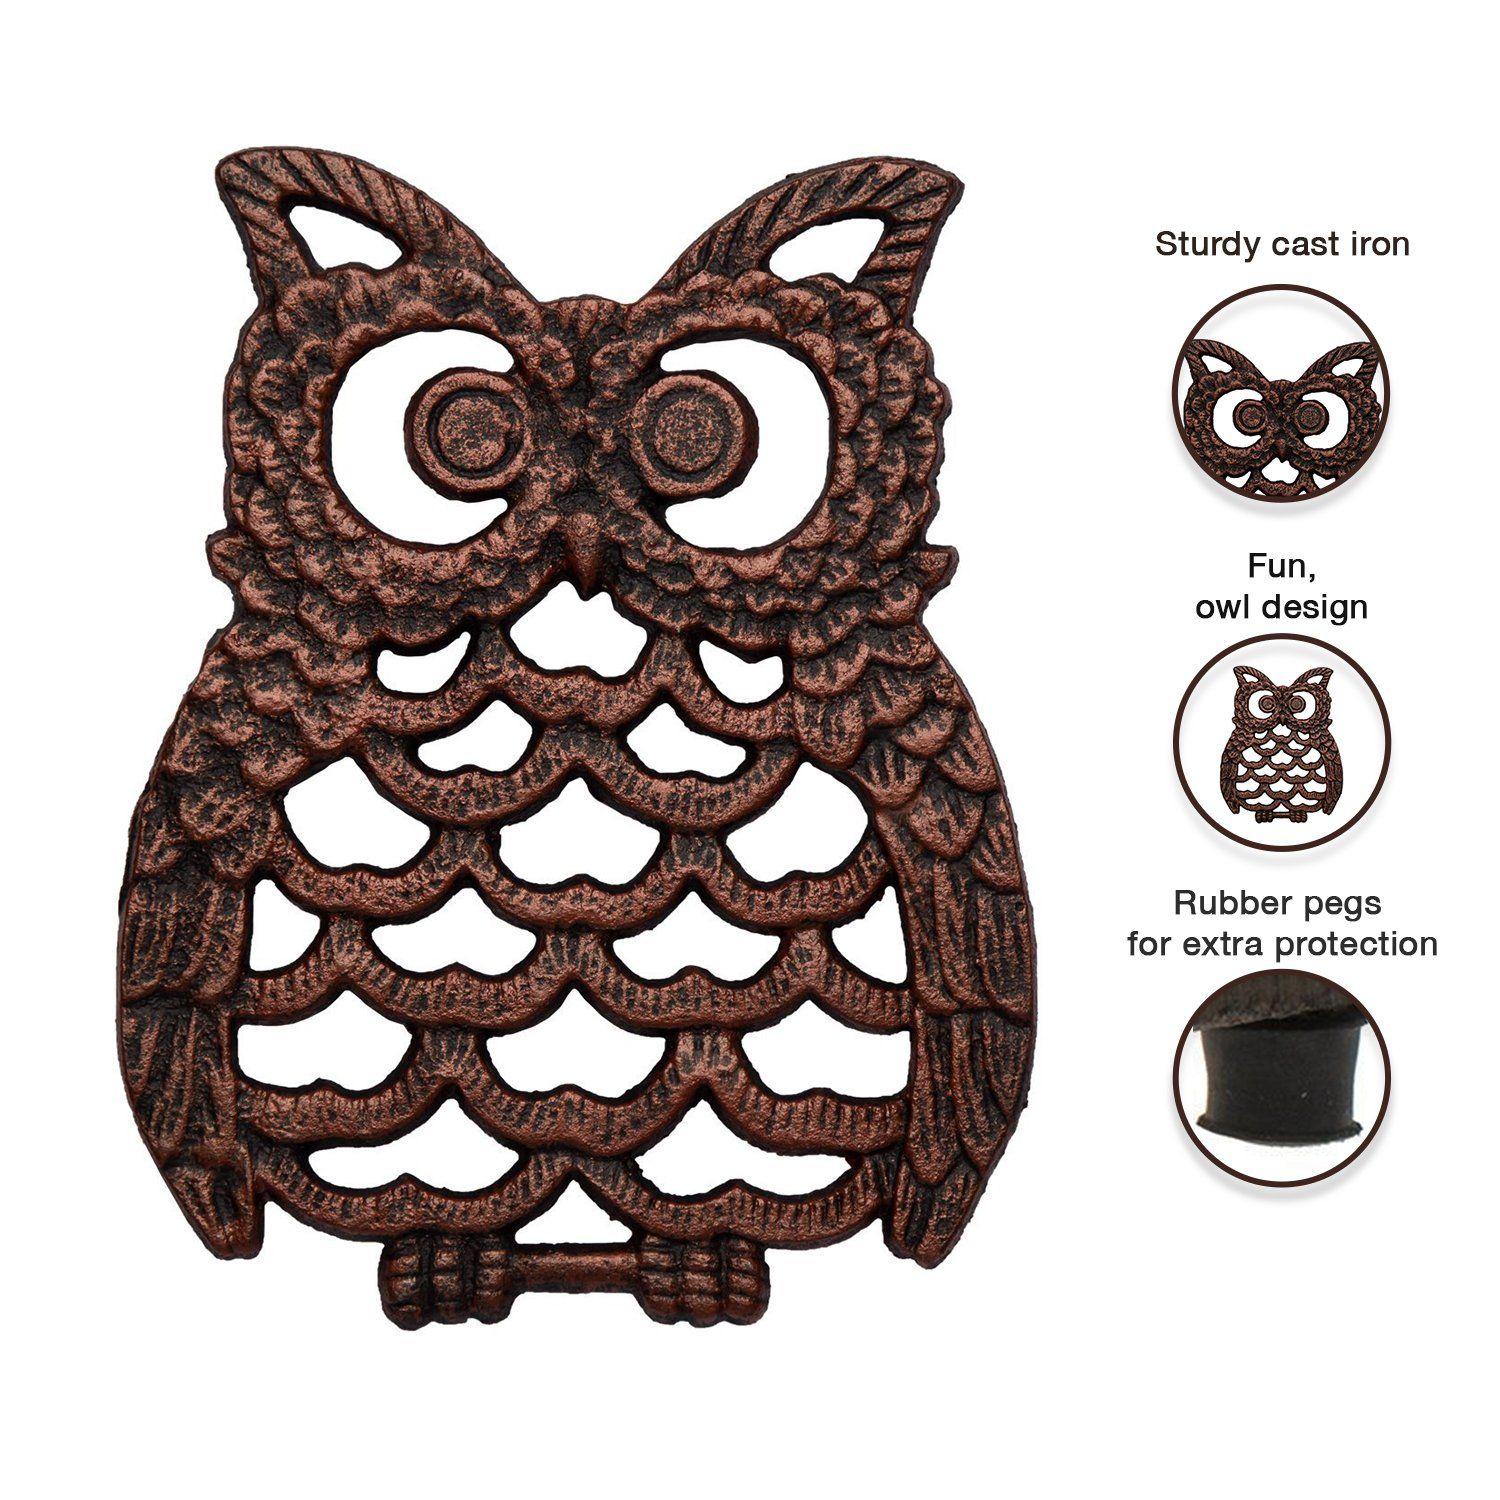 Owl Feet Logo - Cast Iron Owl Trivet Trivet for Kitchen Counter or